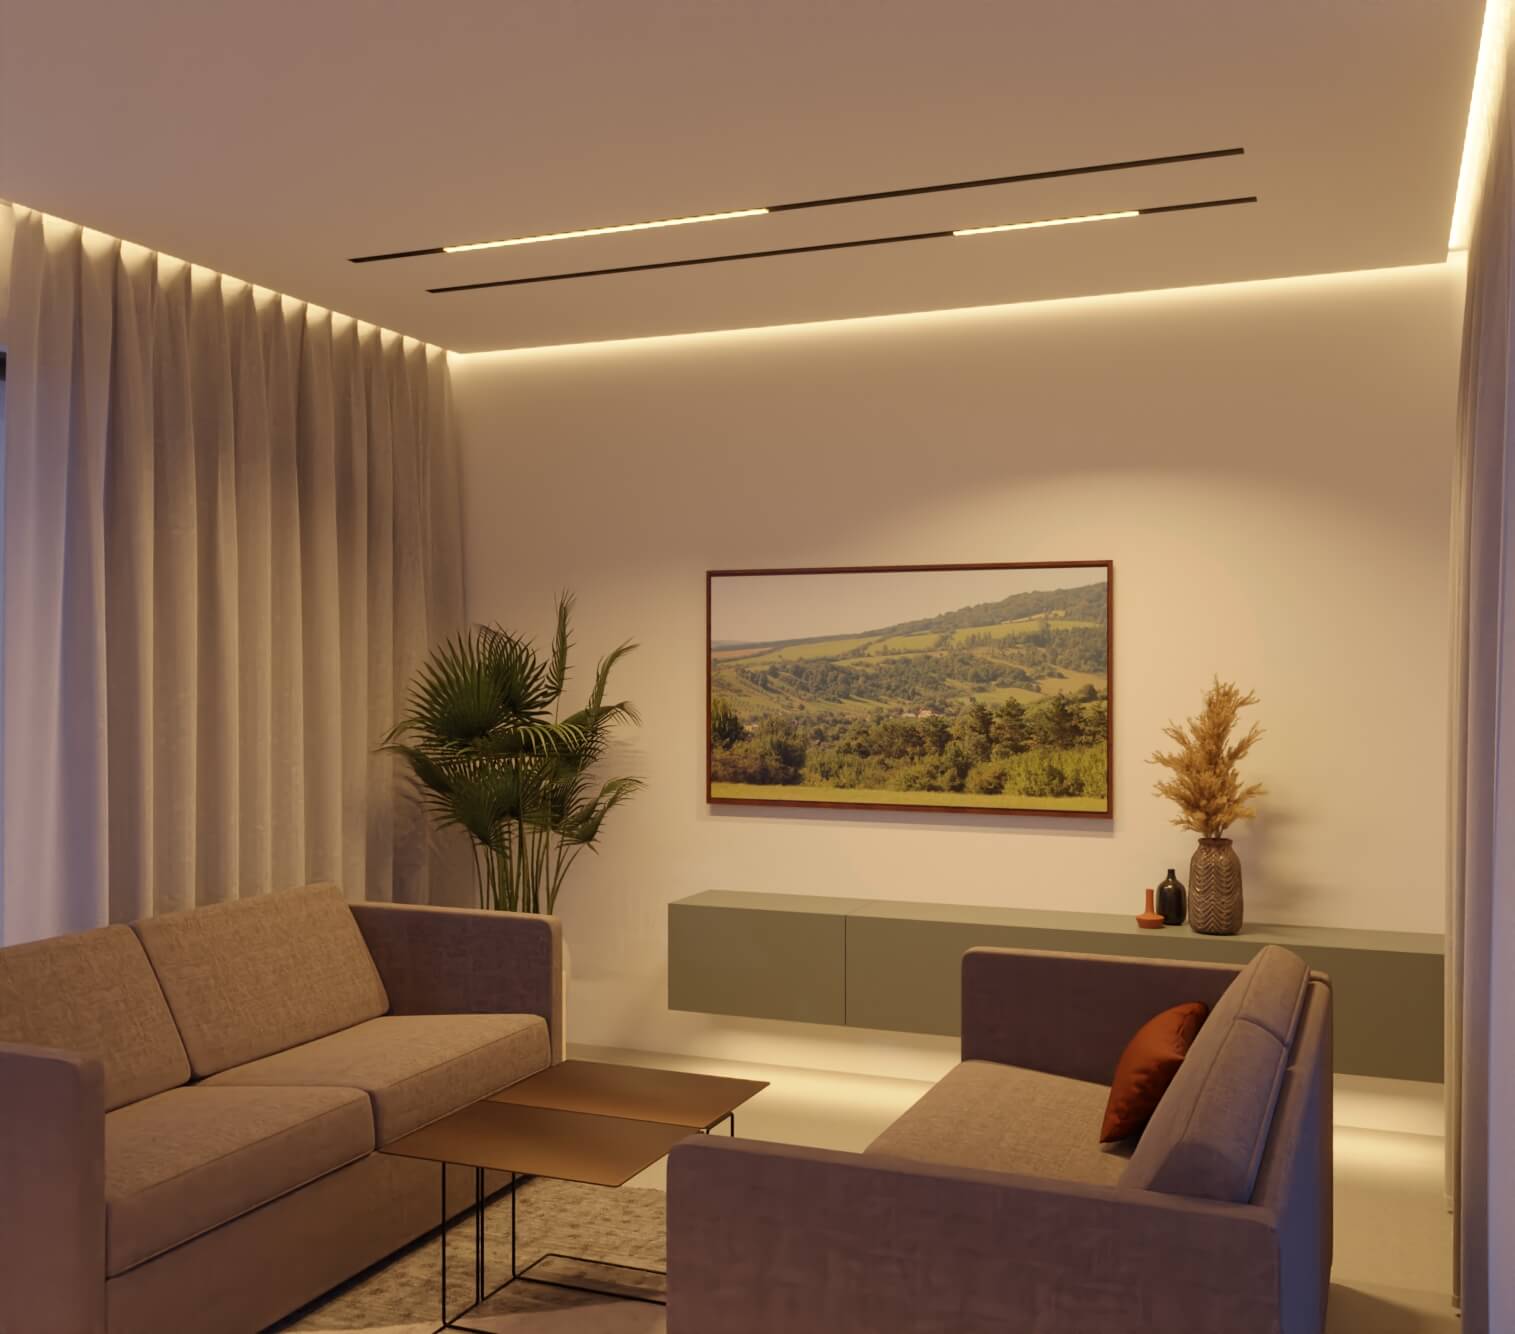 LED Alu Profil Mozel Einbauprofil - Wohnzimmer mit schwarzer Abdeckung.jpg